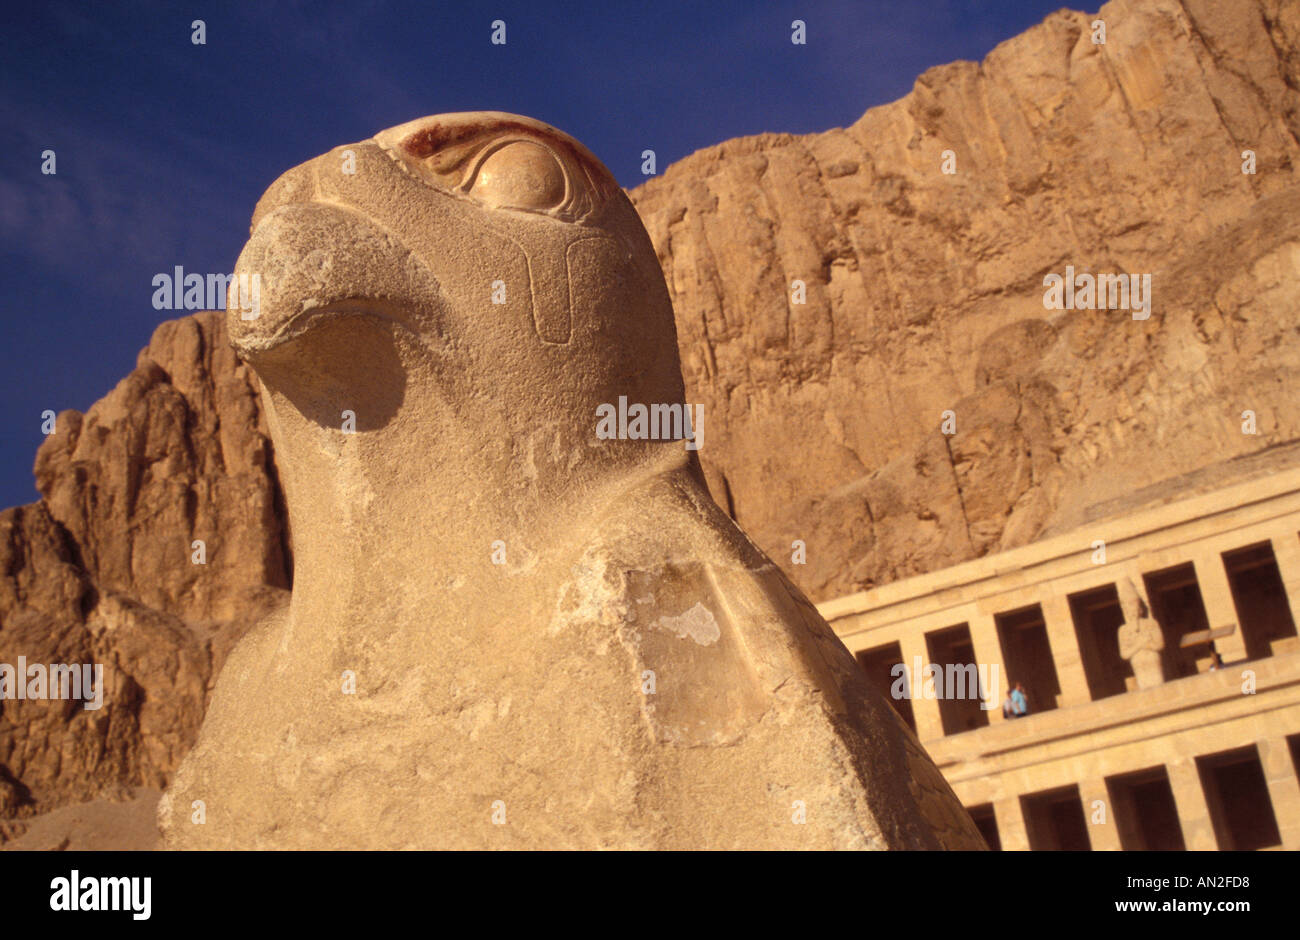 Pèlerin de la statue dans le Temple de la Reine Hatshepsout à Thèbes (Louxor), Égypte Banque D'Images